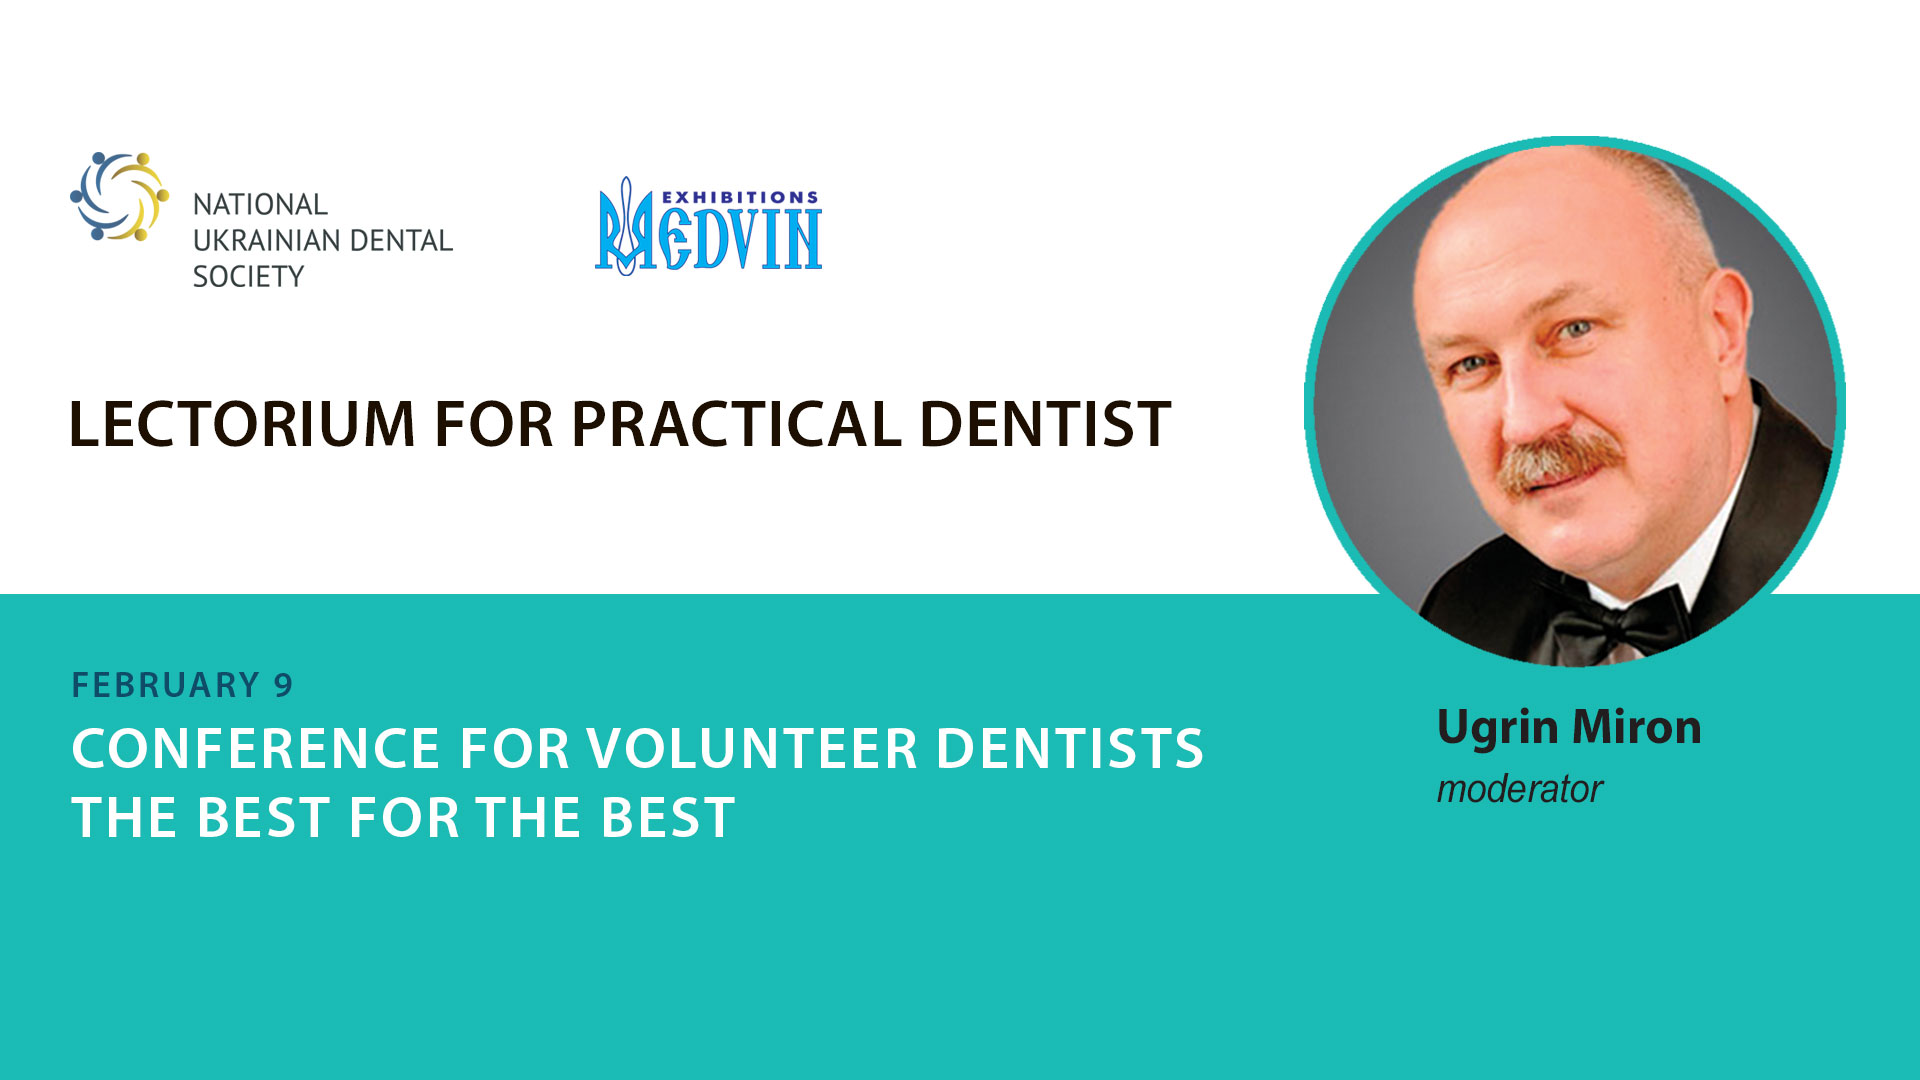 Dental Volunteers Conference "Best for Best"